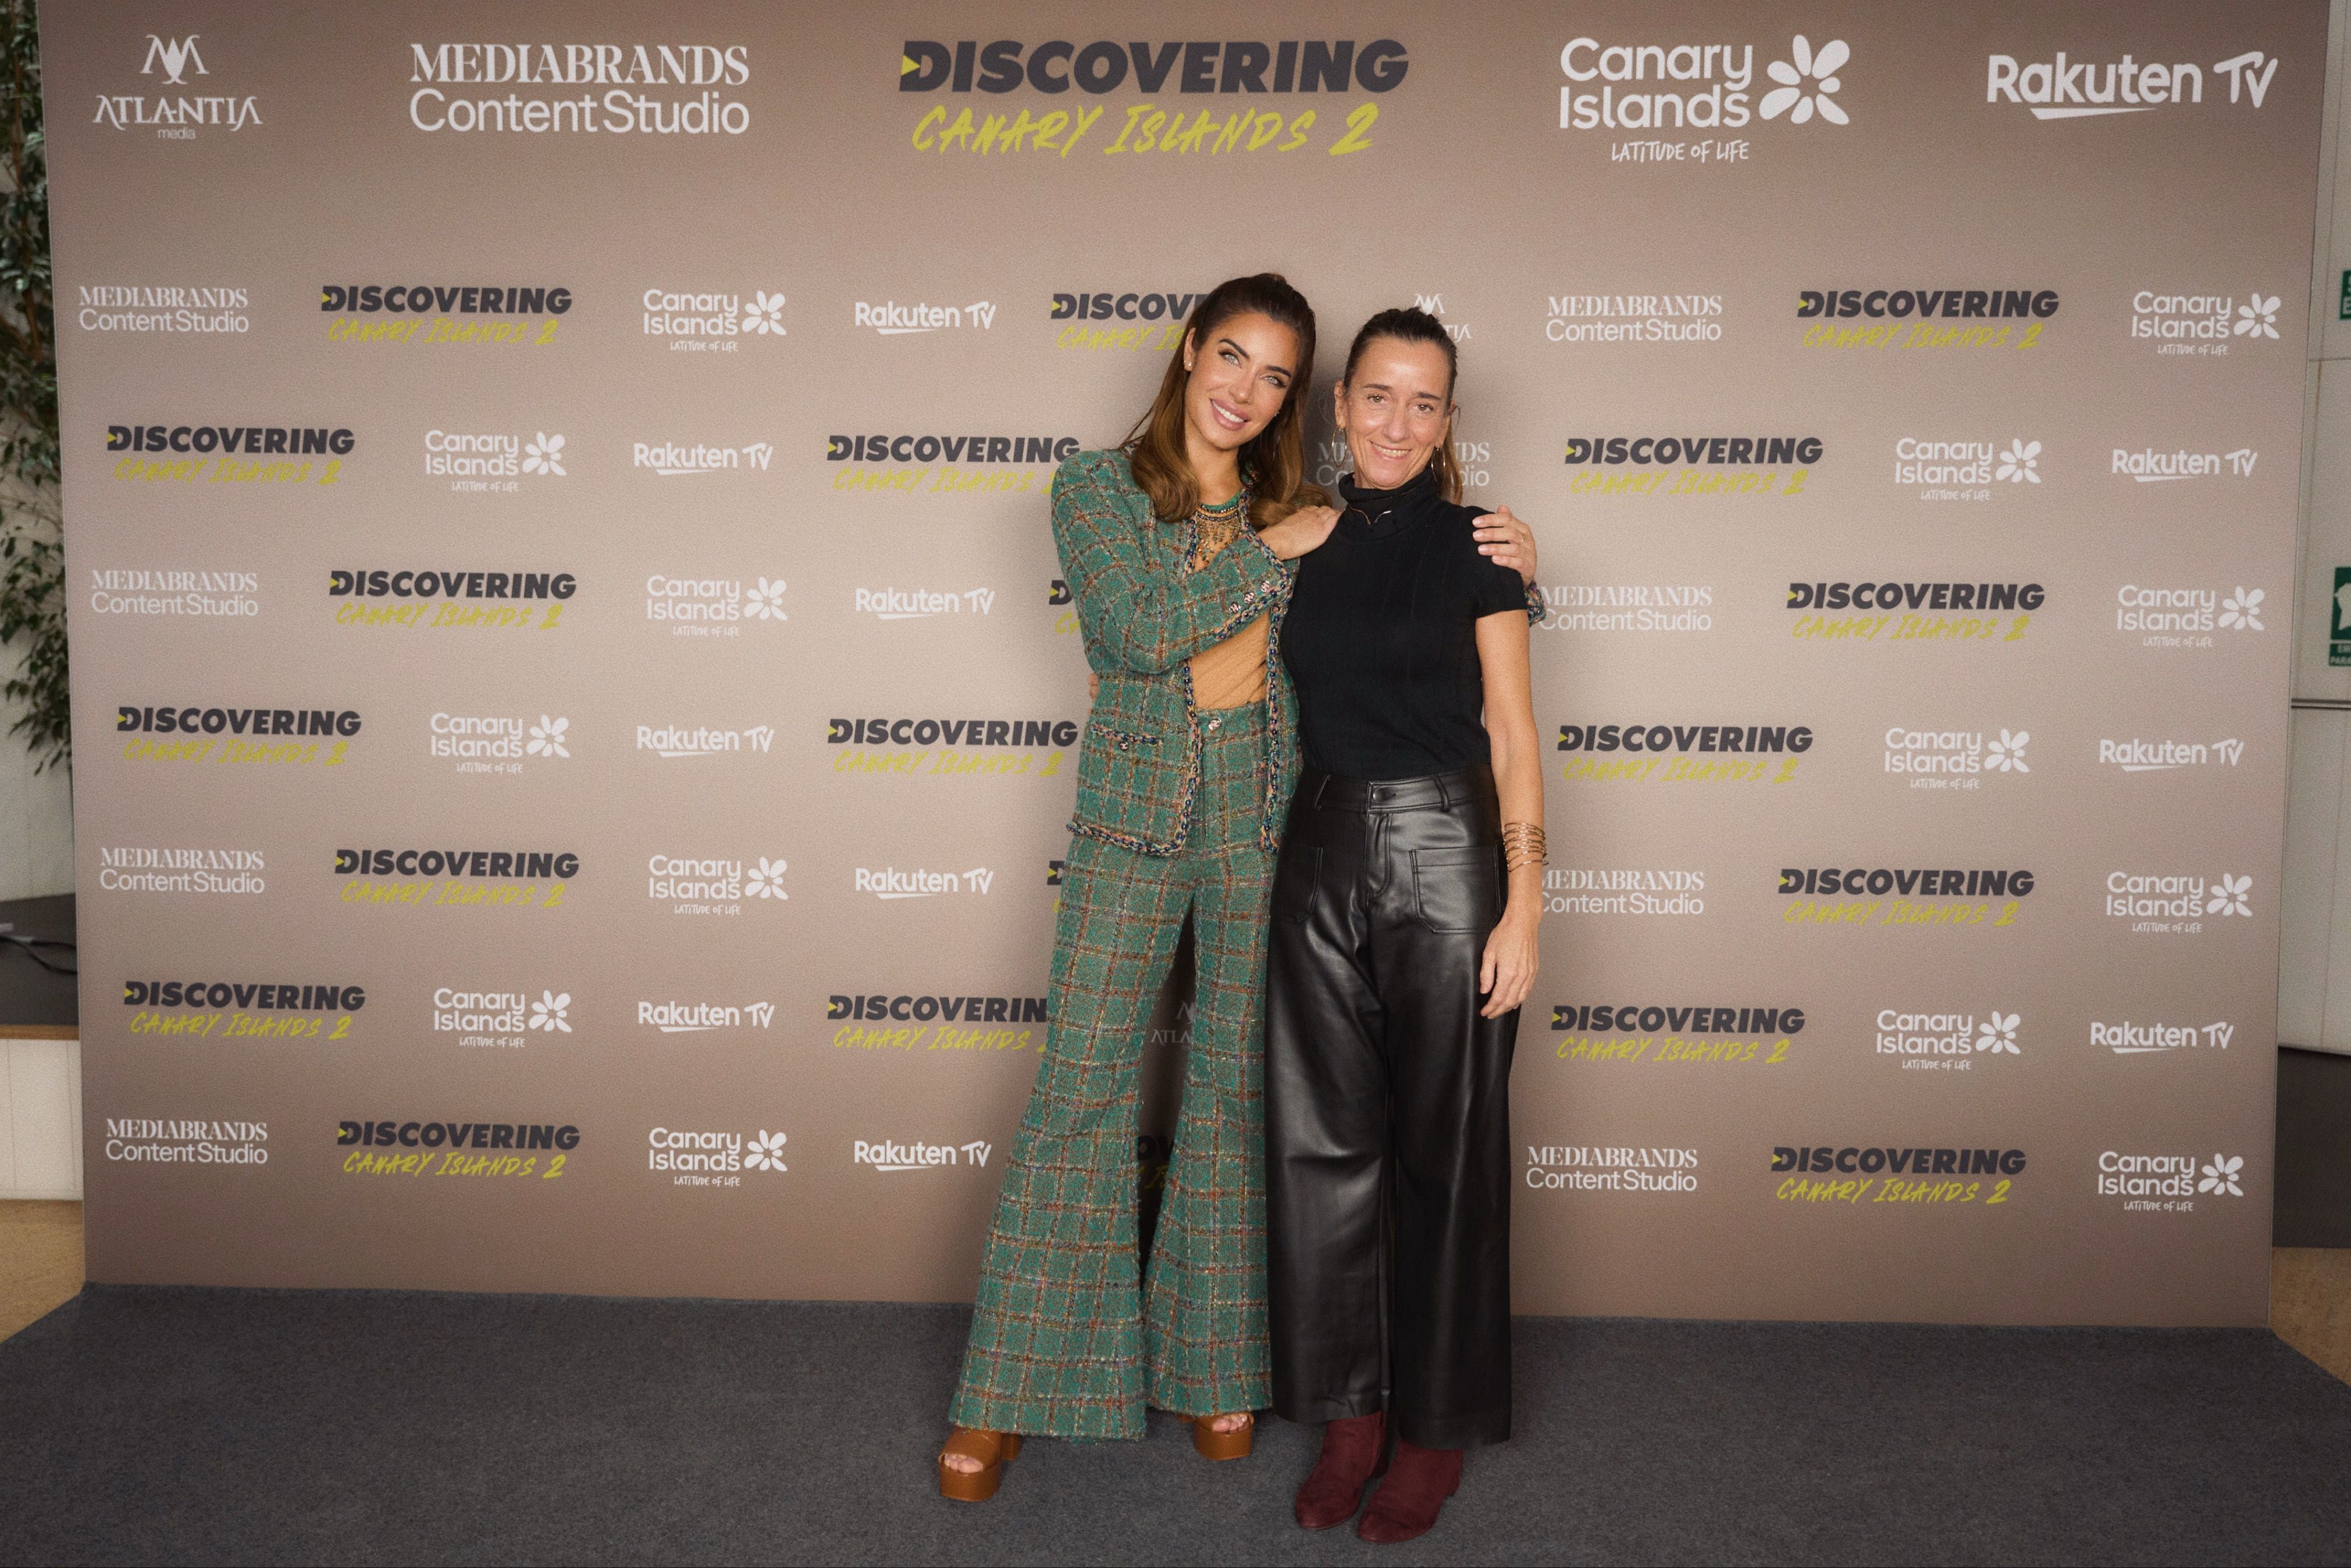 La presentadora de 'Discovering Canary Islands', Pilar Rubio, y la directora de proyectos de marketing y comunicación de Turismo de Canarias, Elena González Vázquez.